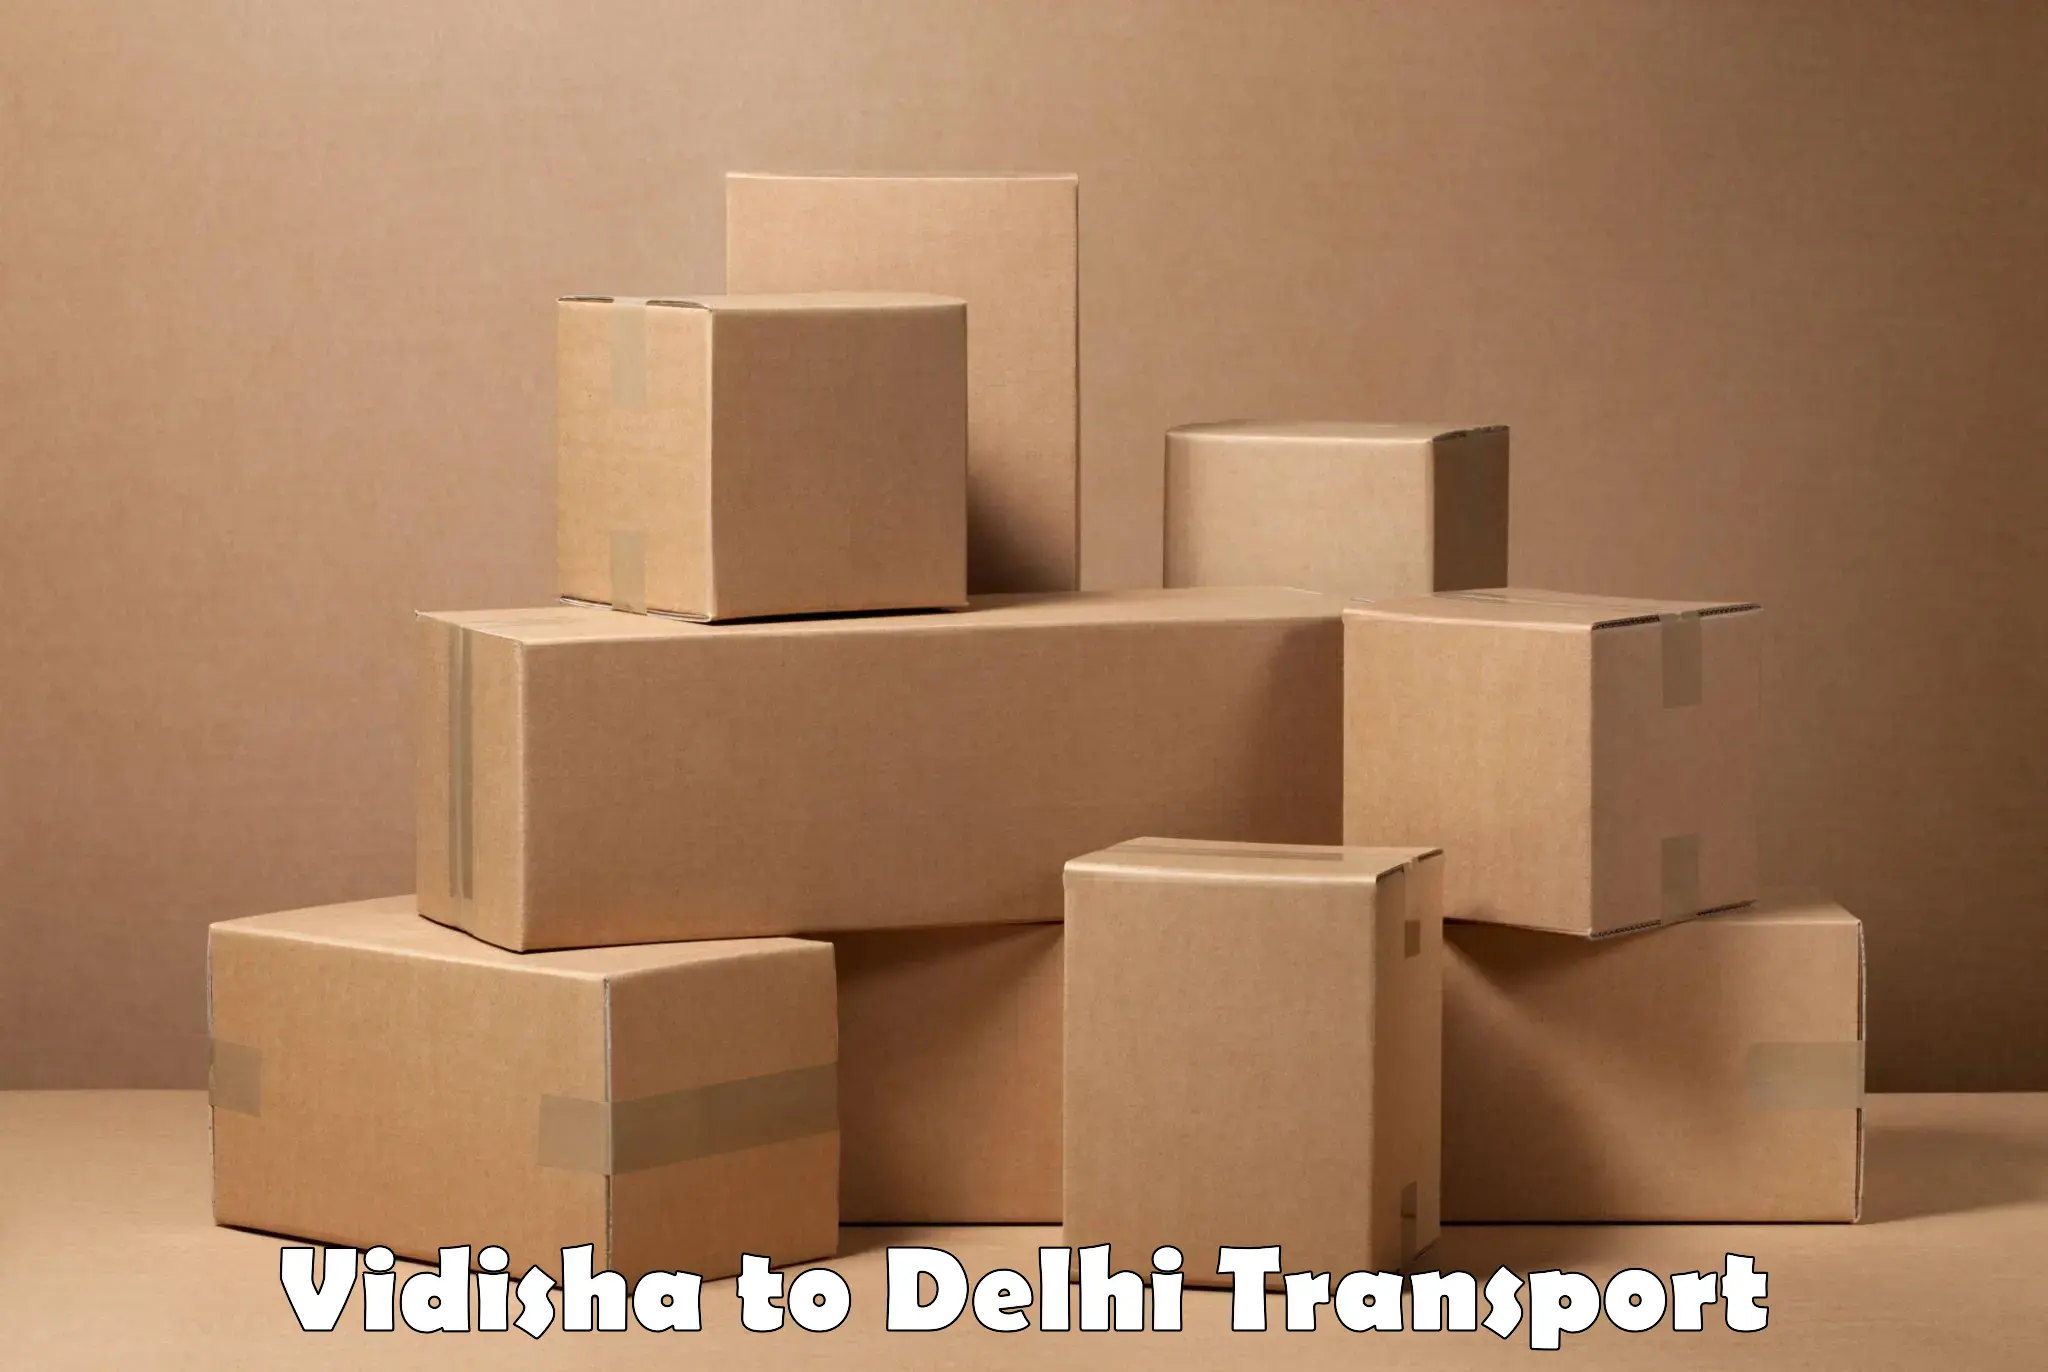 Commercial transport service Vidisha to East Delhi